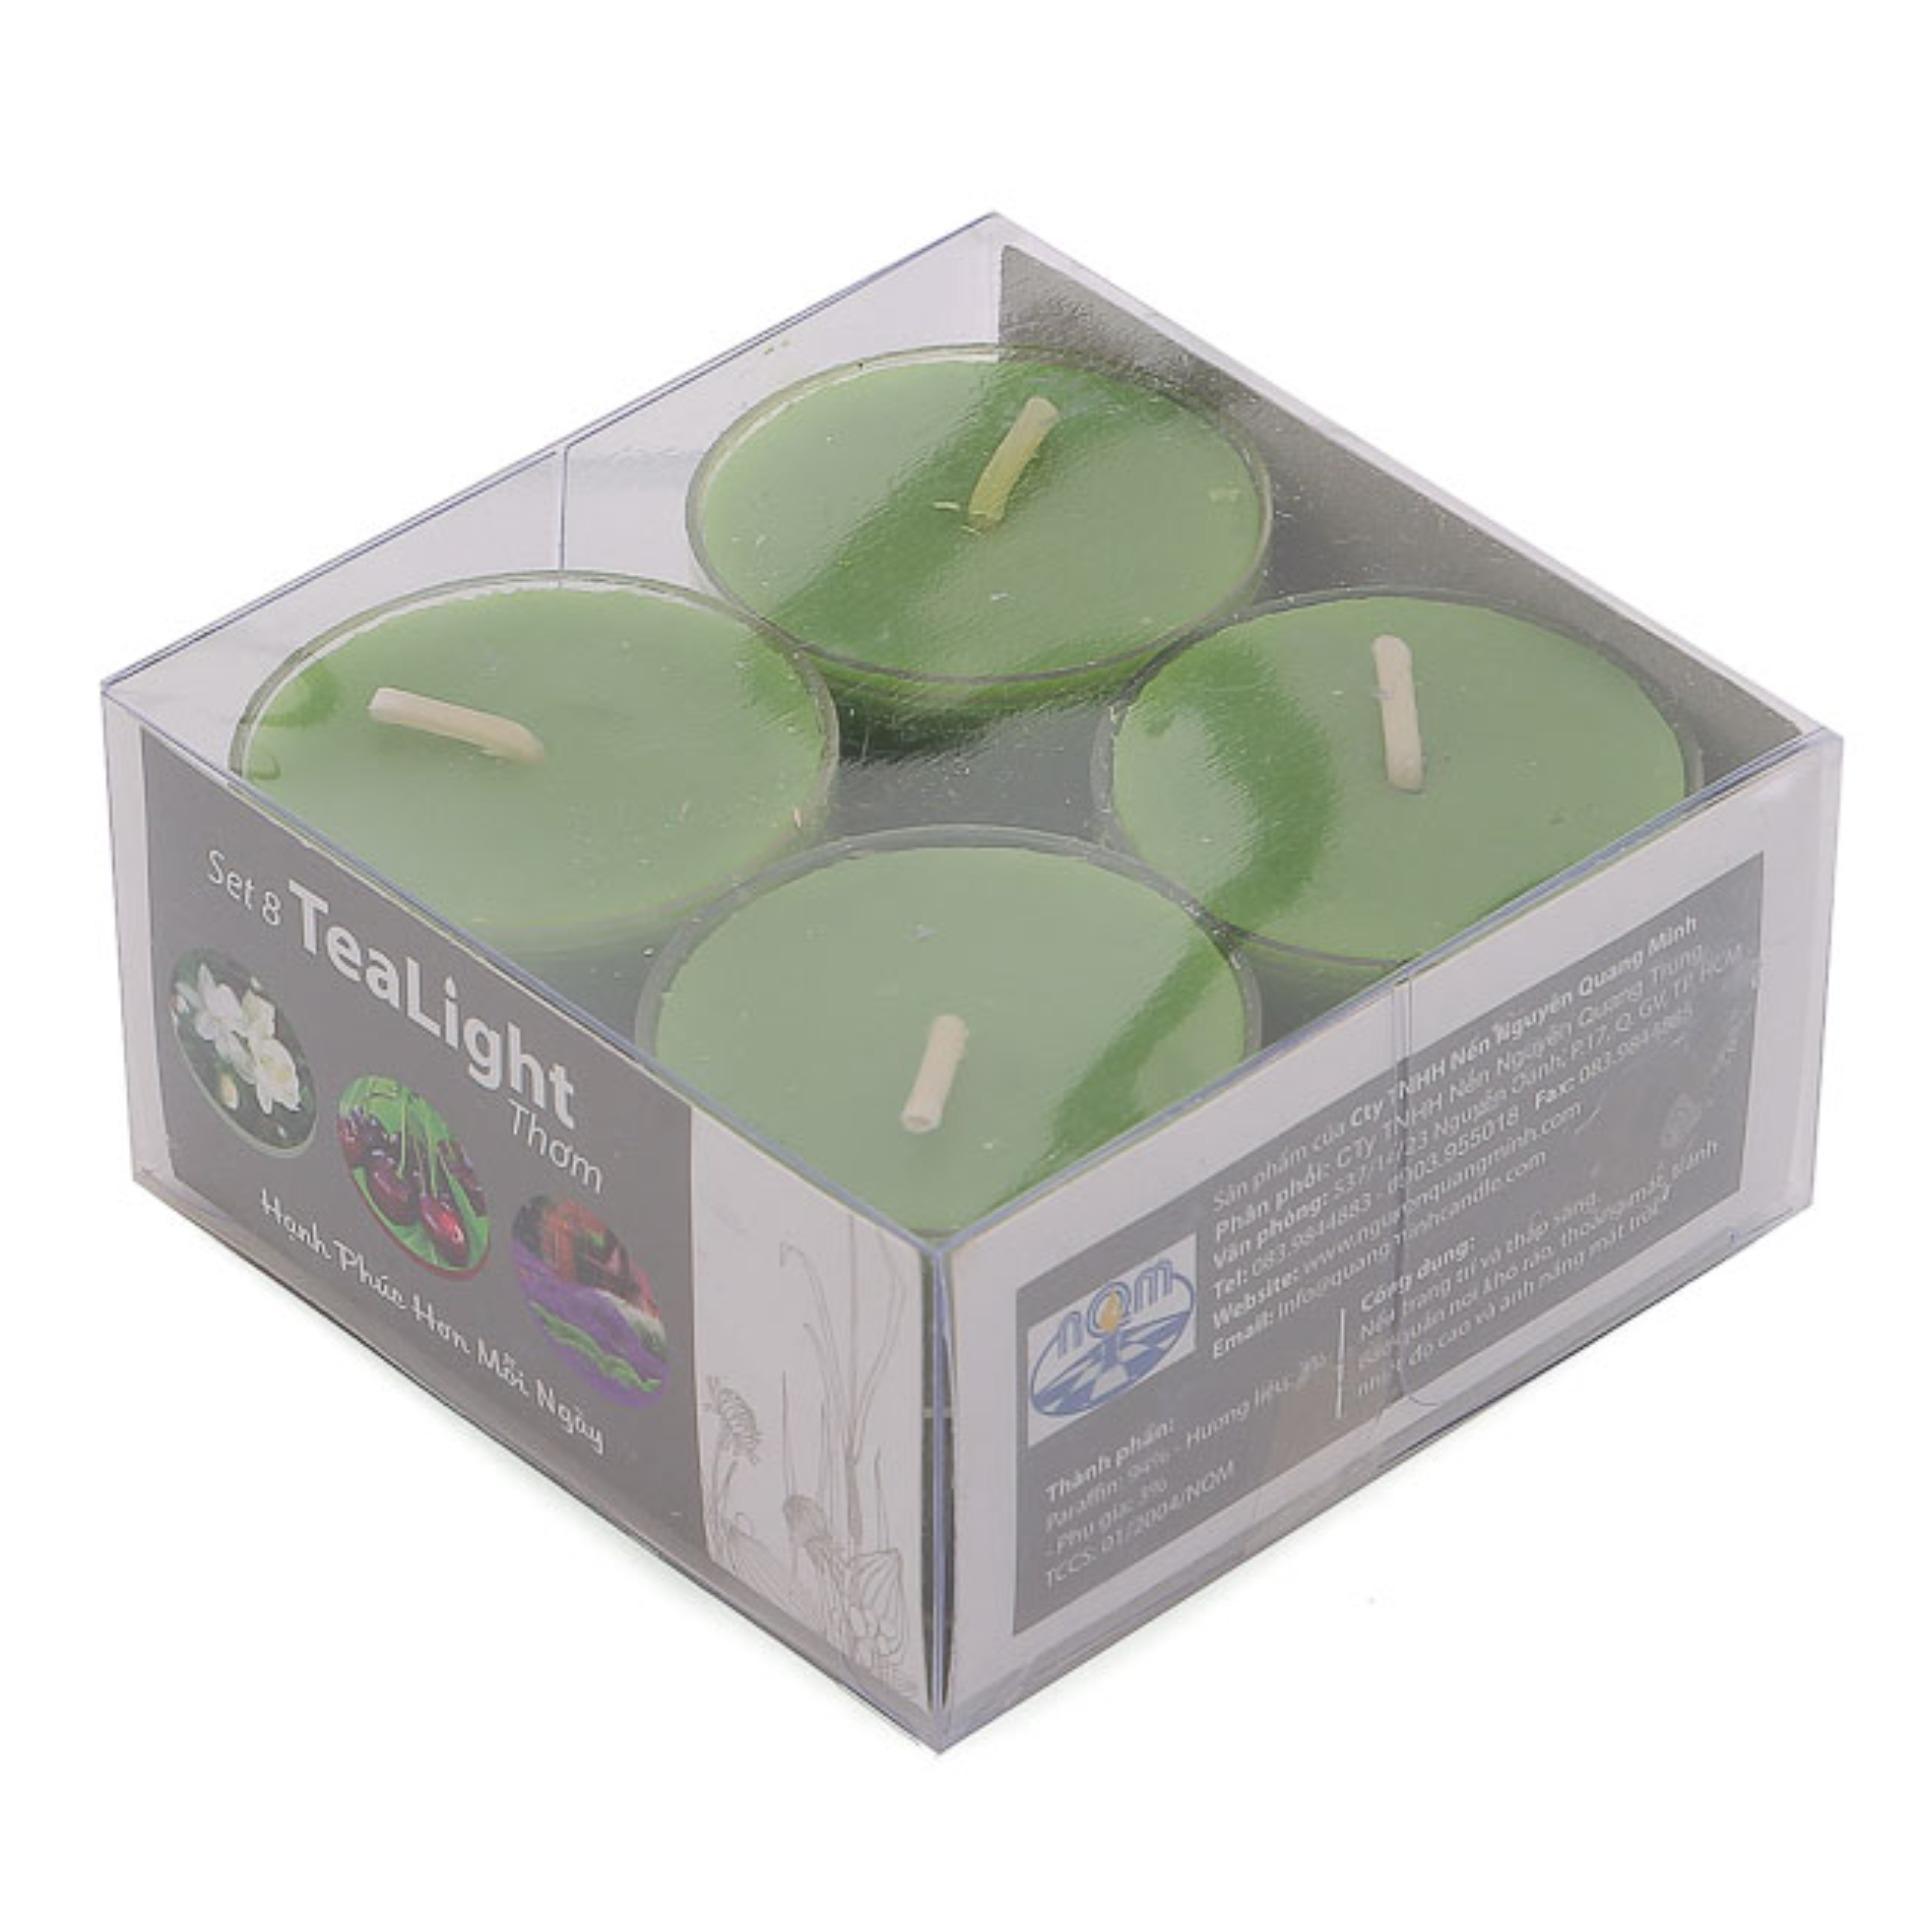 Bộ 6 hộp nến tealight thơm đế nhựa (8 nến/hộp) NQM FtraMart (Xanh lá)